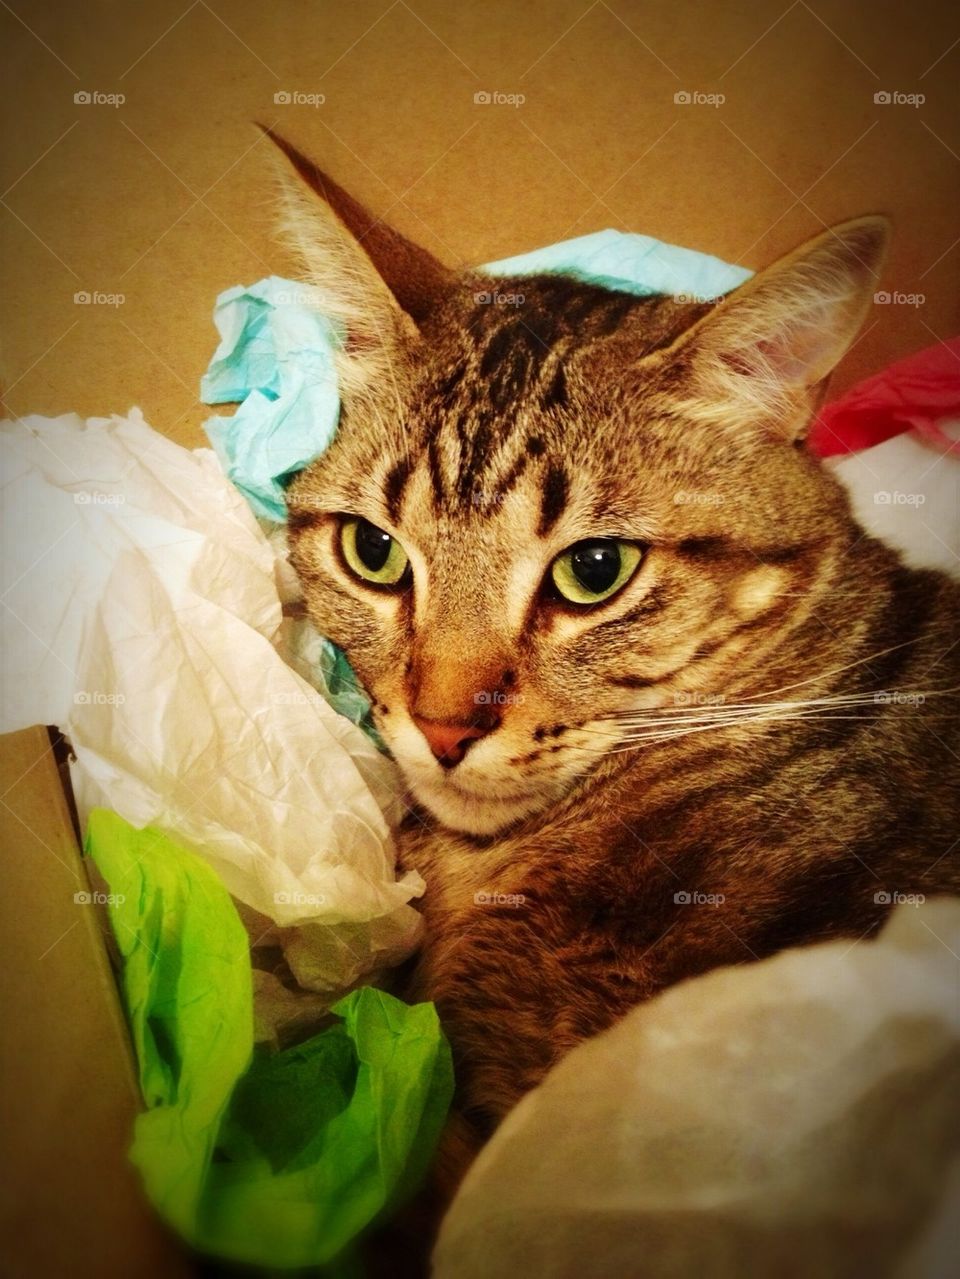 Tissue cat